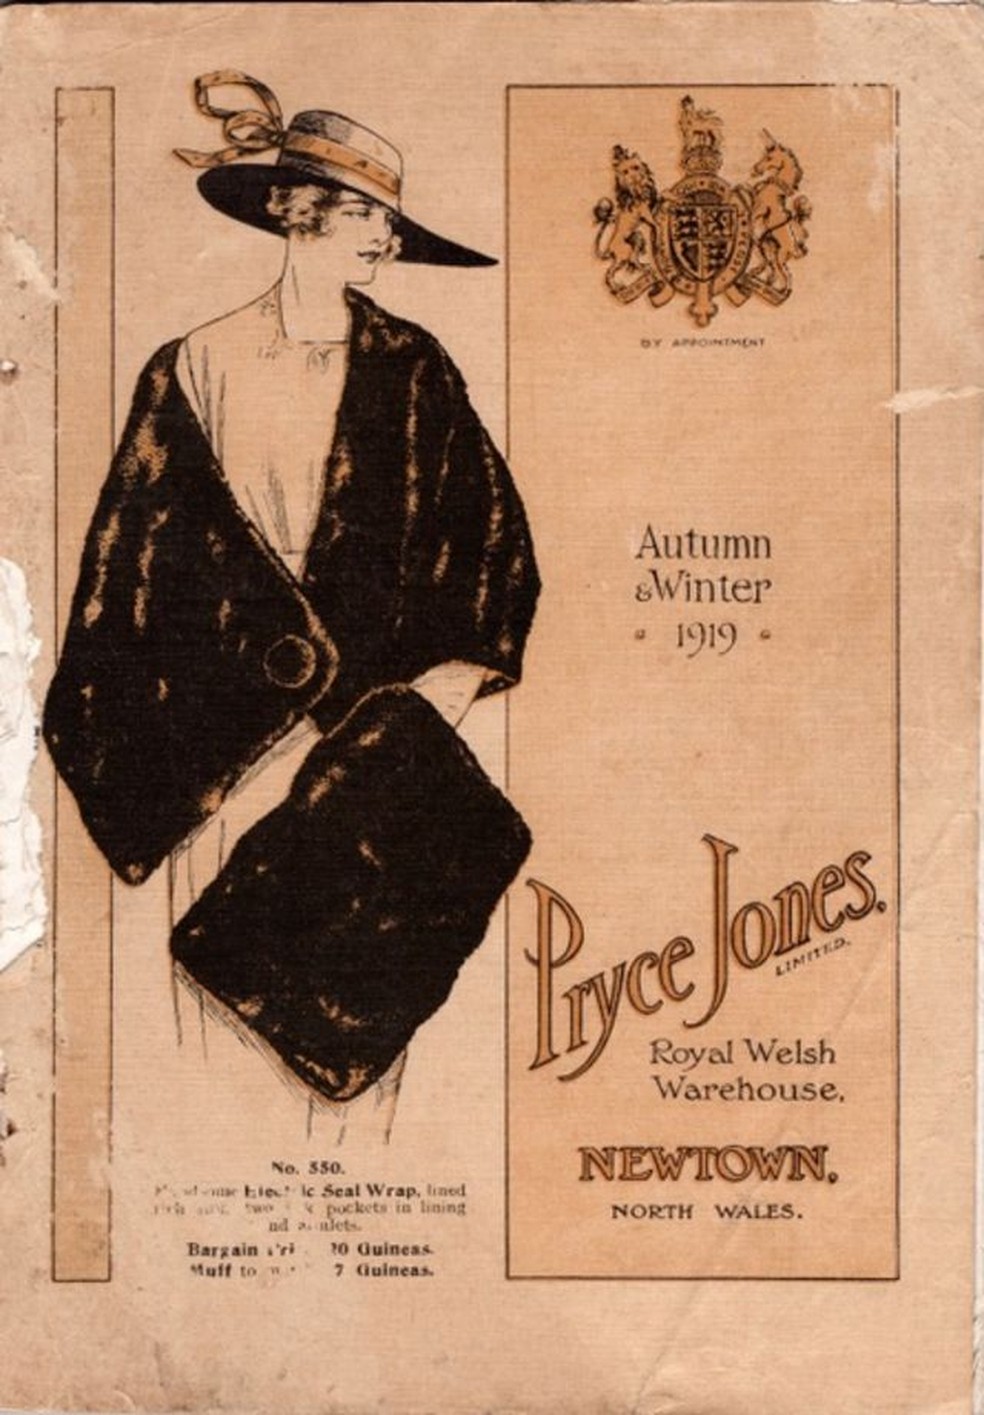 O catálogo da Pryce Jones incluía roupas que estavam na moda. — Foto: NEWTOWN TEXTILE MUSEUM via BBC